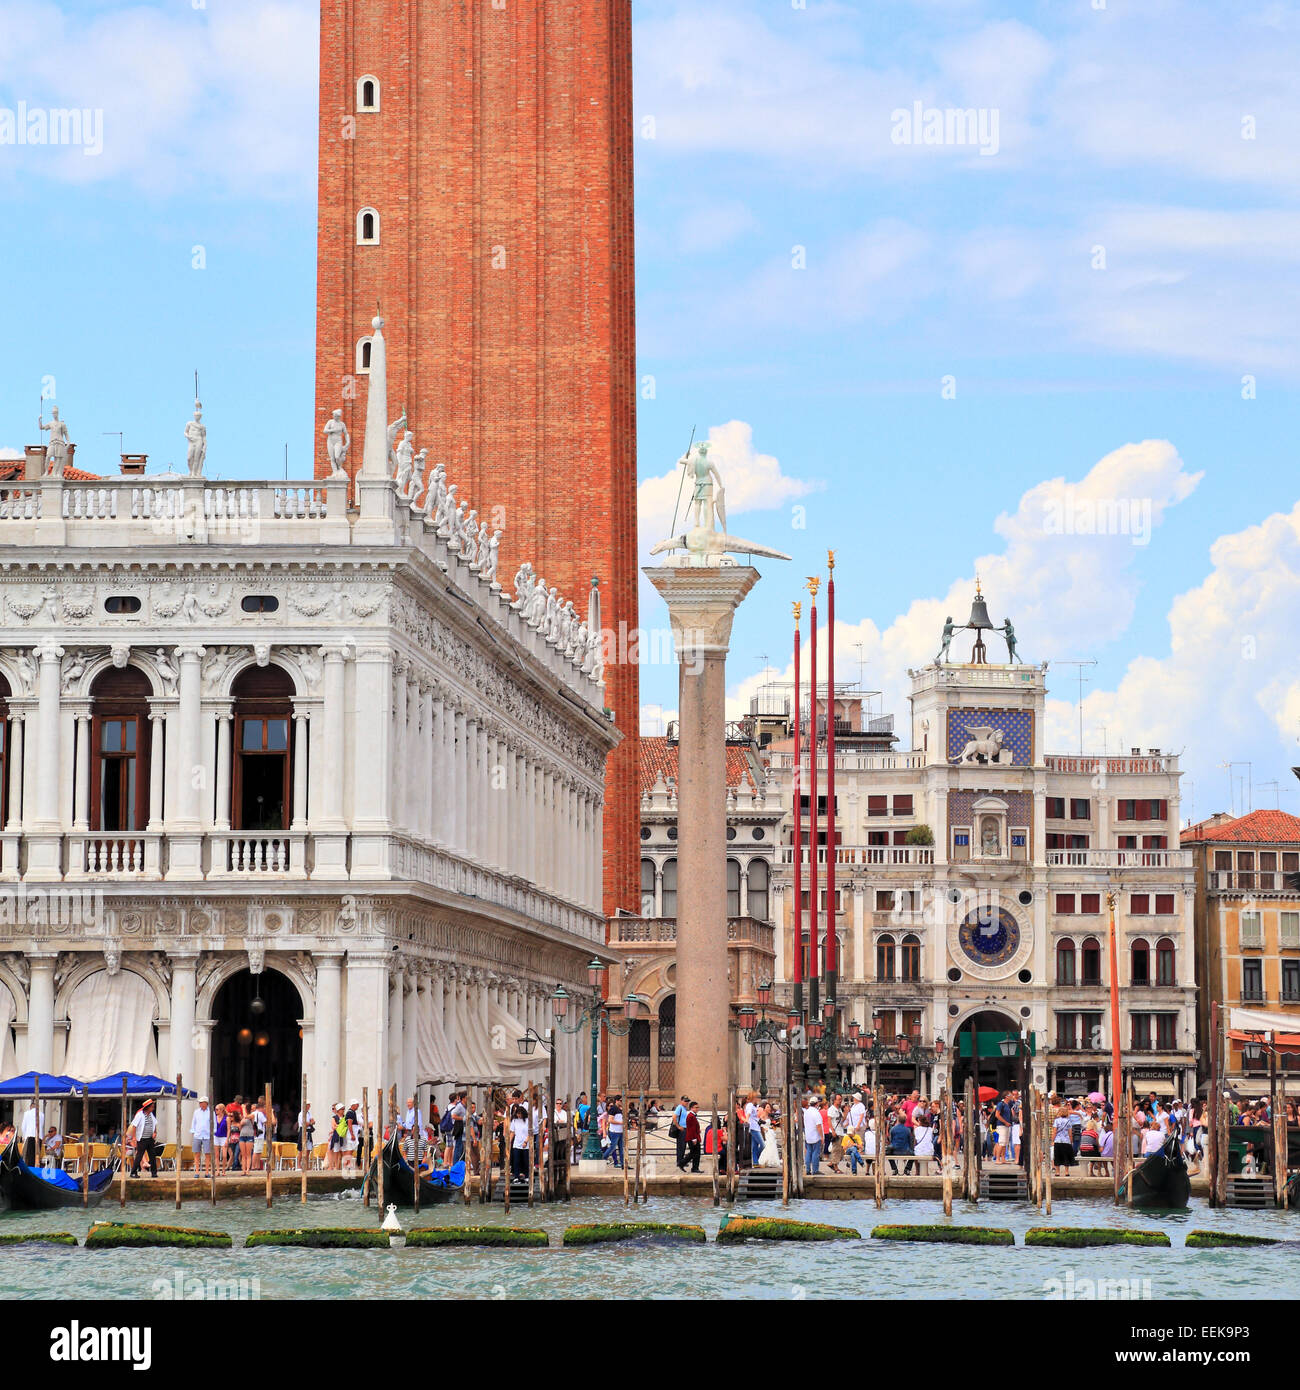 St Mark's square and bell tower, Venice Italy IT: Piazza San Marco, Campanile, Venezia Italia DE: Markusplatz, Venedig Italien Stock Photo